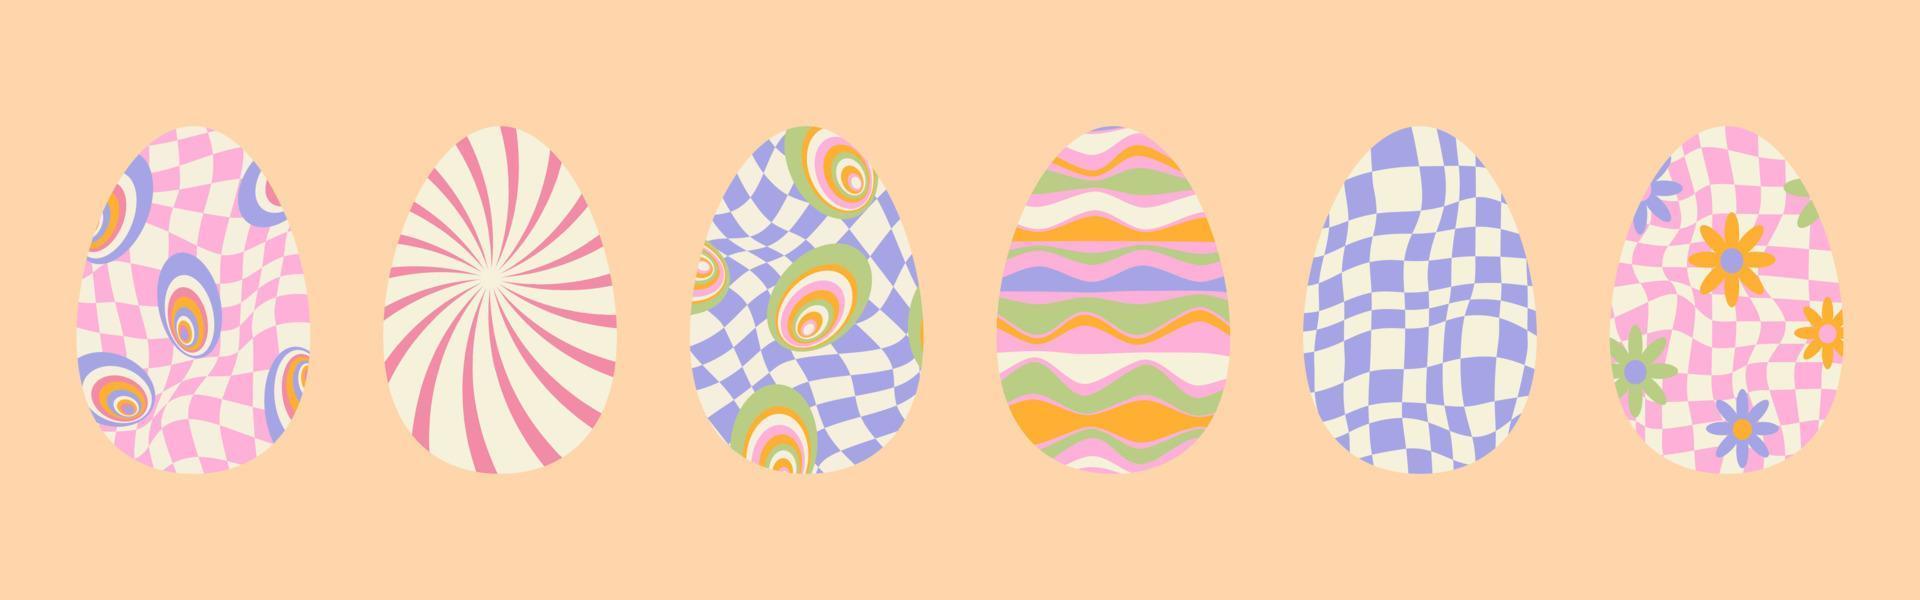 häftig påsk ägg vriden och förvrängd vektor textur i trendig retro psychedelic stil. skraj hippie 70s bakgrunder. y2k estetisk. uppsättning av påsk ägg i färgrik optisk illusion